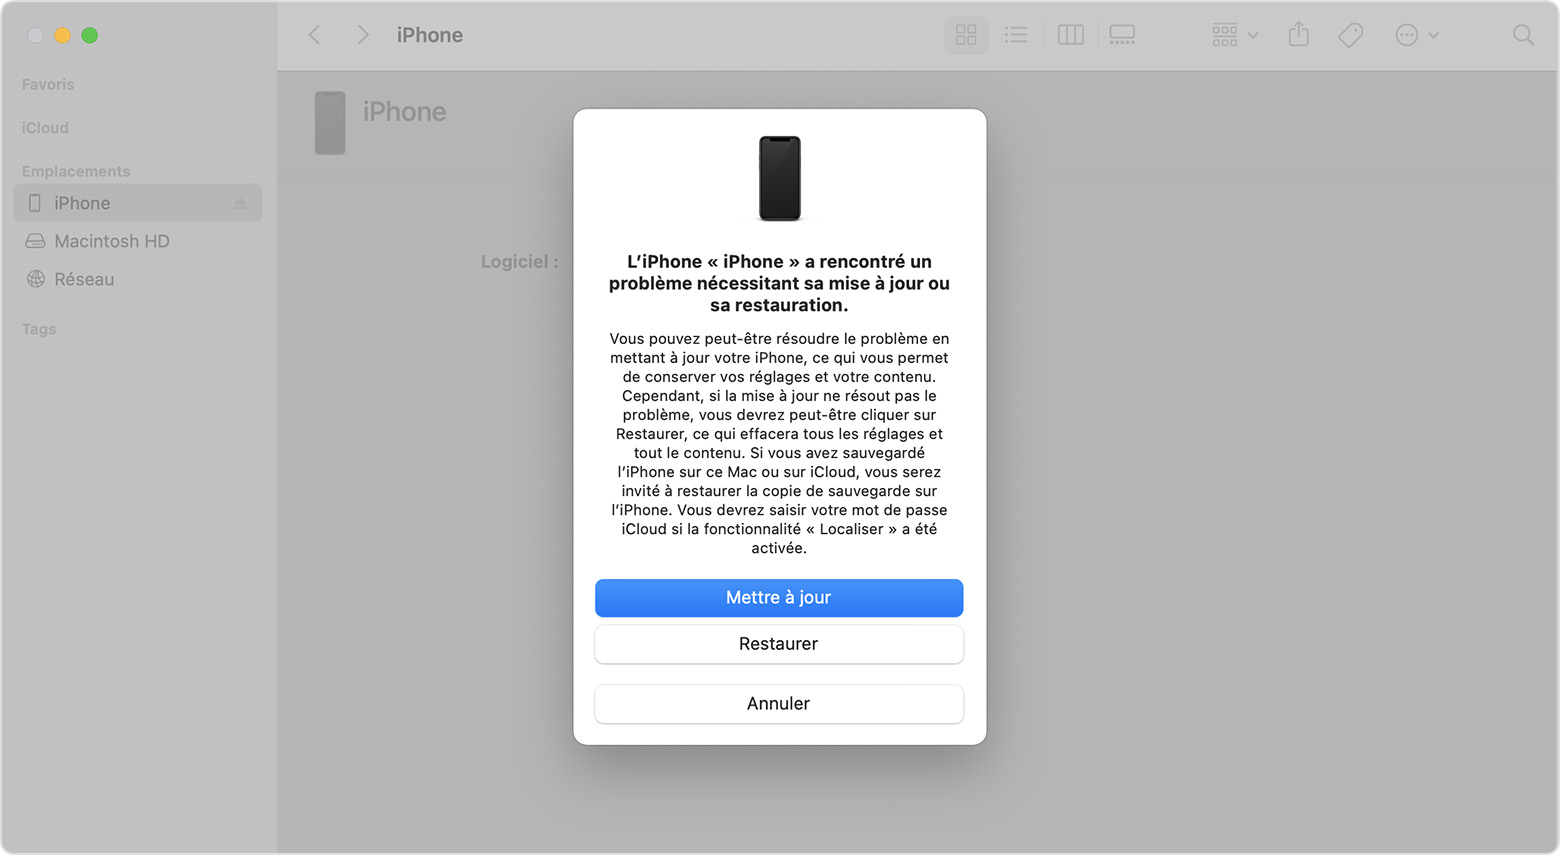 Fenêtre du Finder invitant à mettre à jour ou à restaurer l’iPhone. L’option Mettre à jour est sélectionnée.